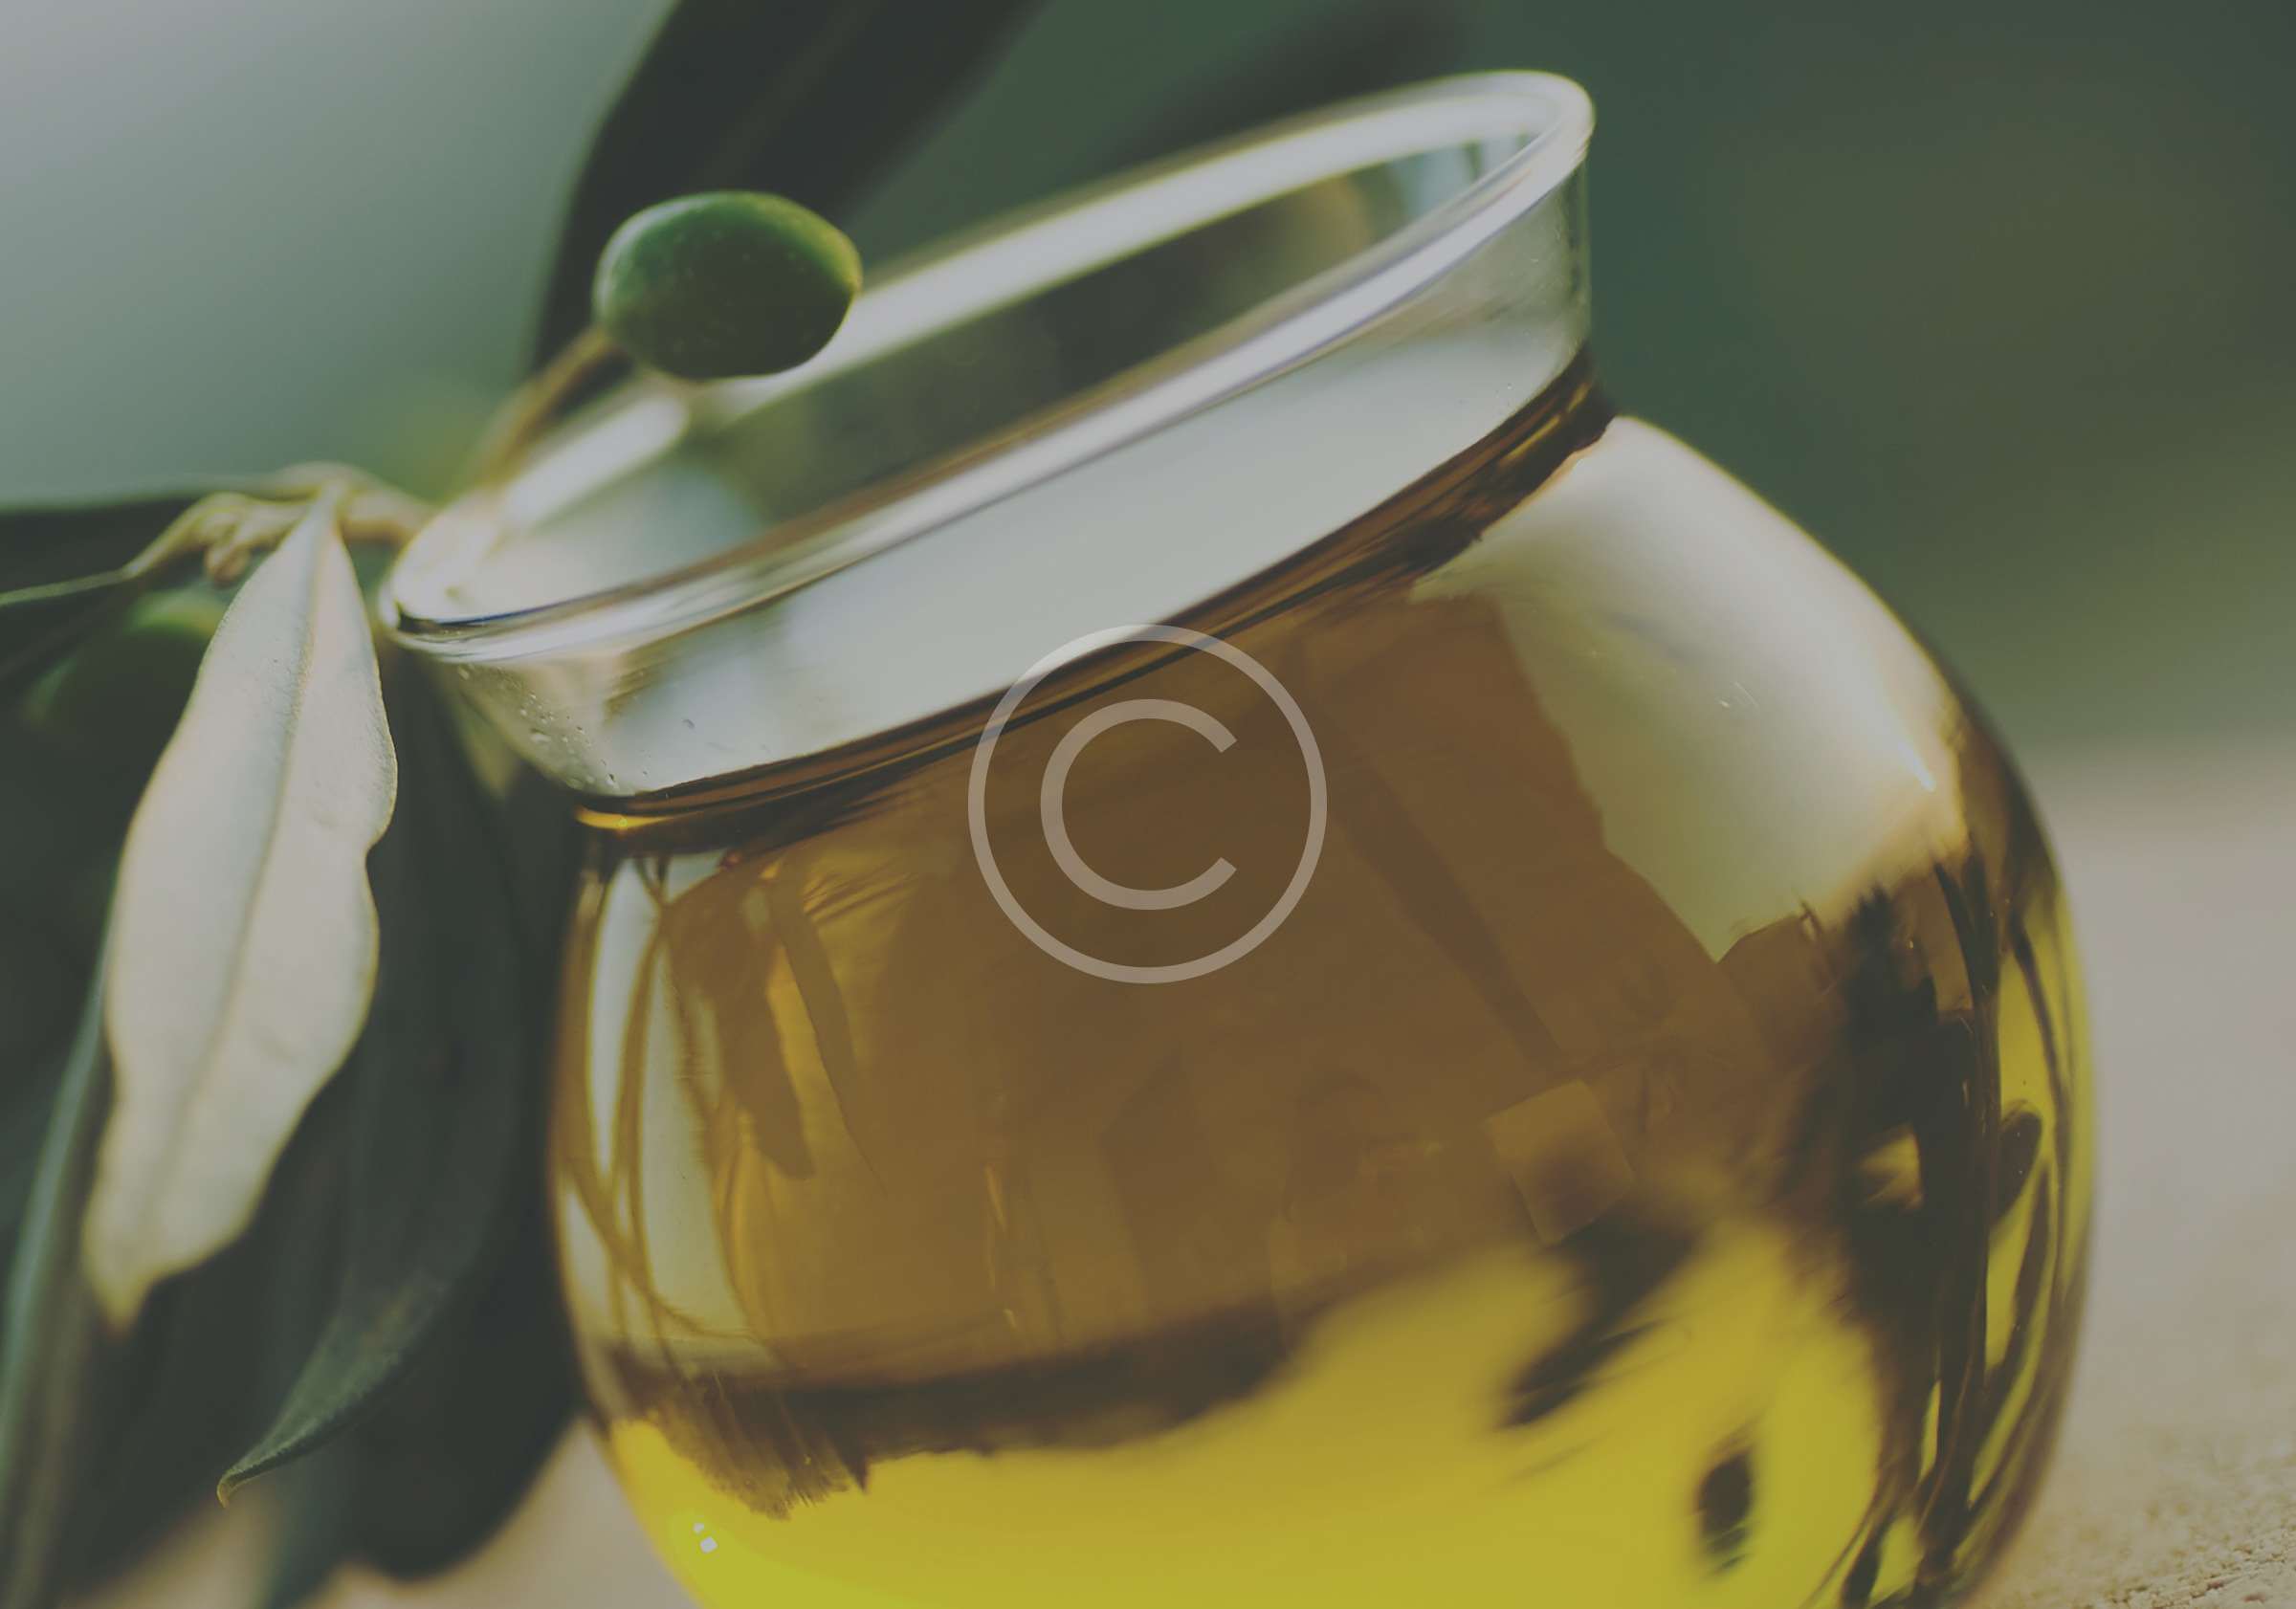 Olive Oil for massage